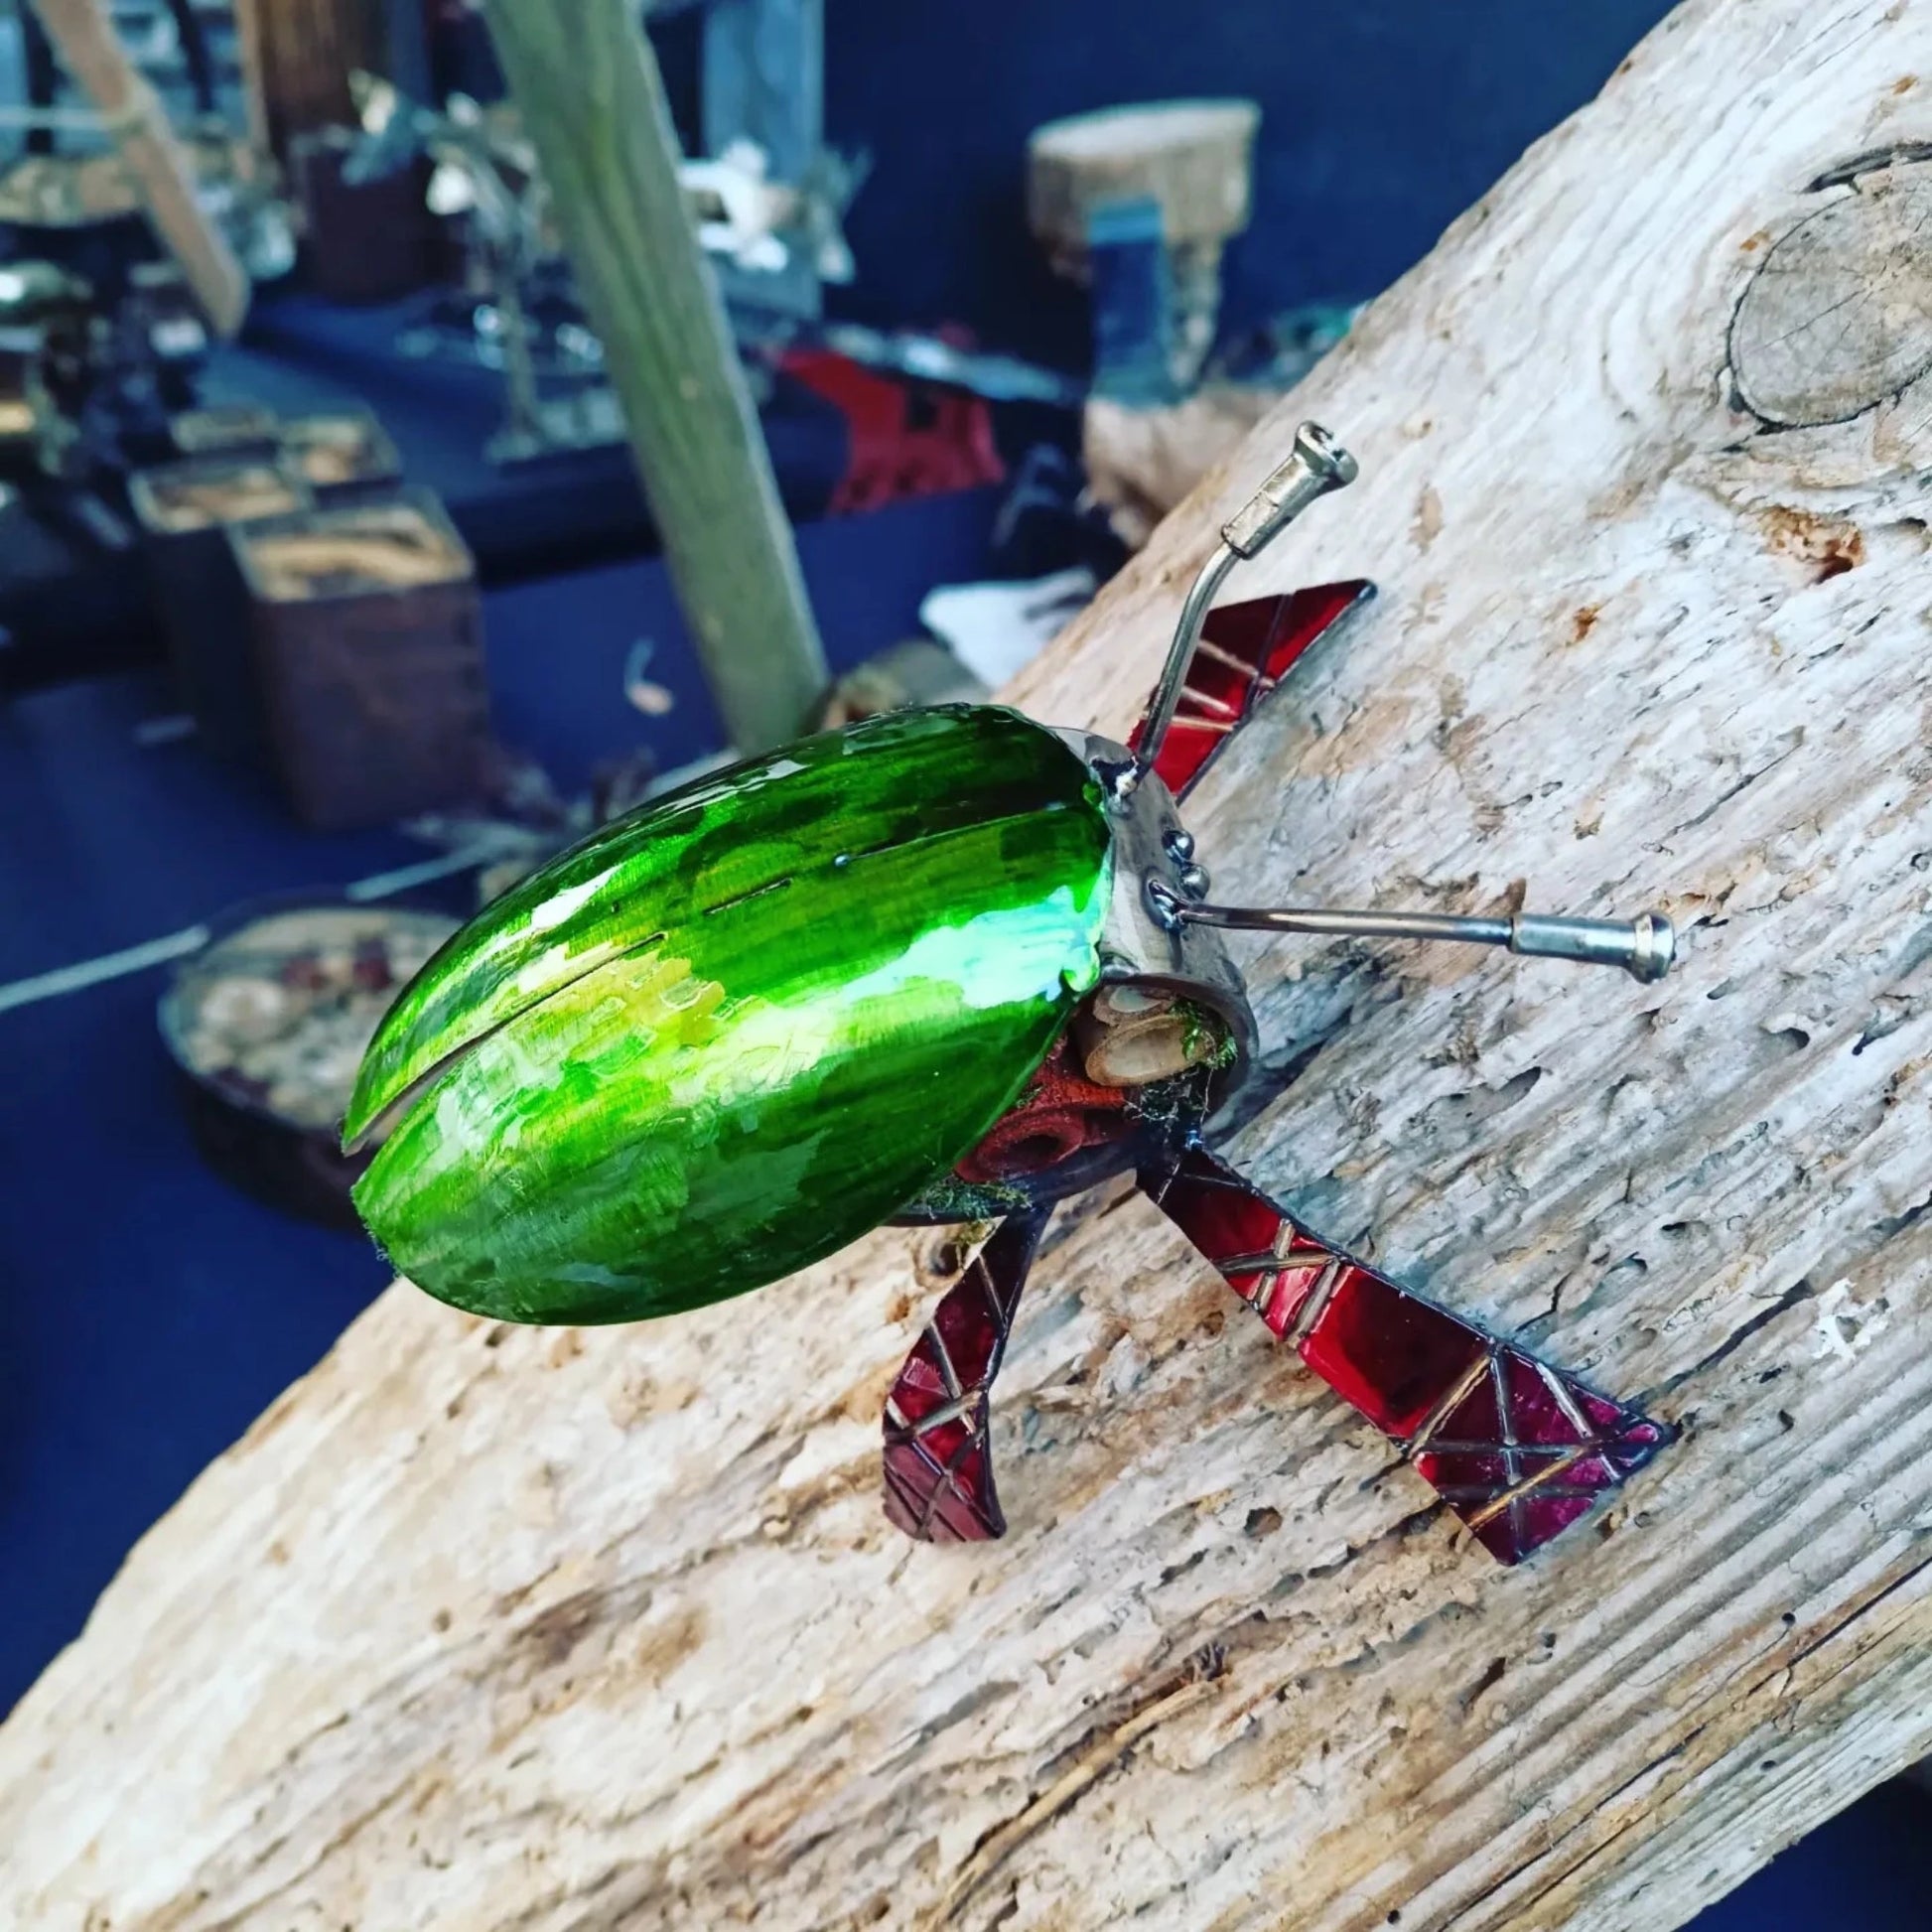 Emerald green mini bug